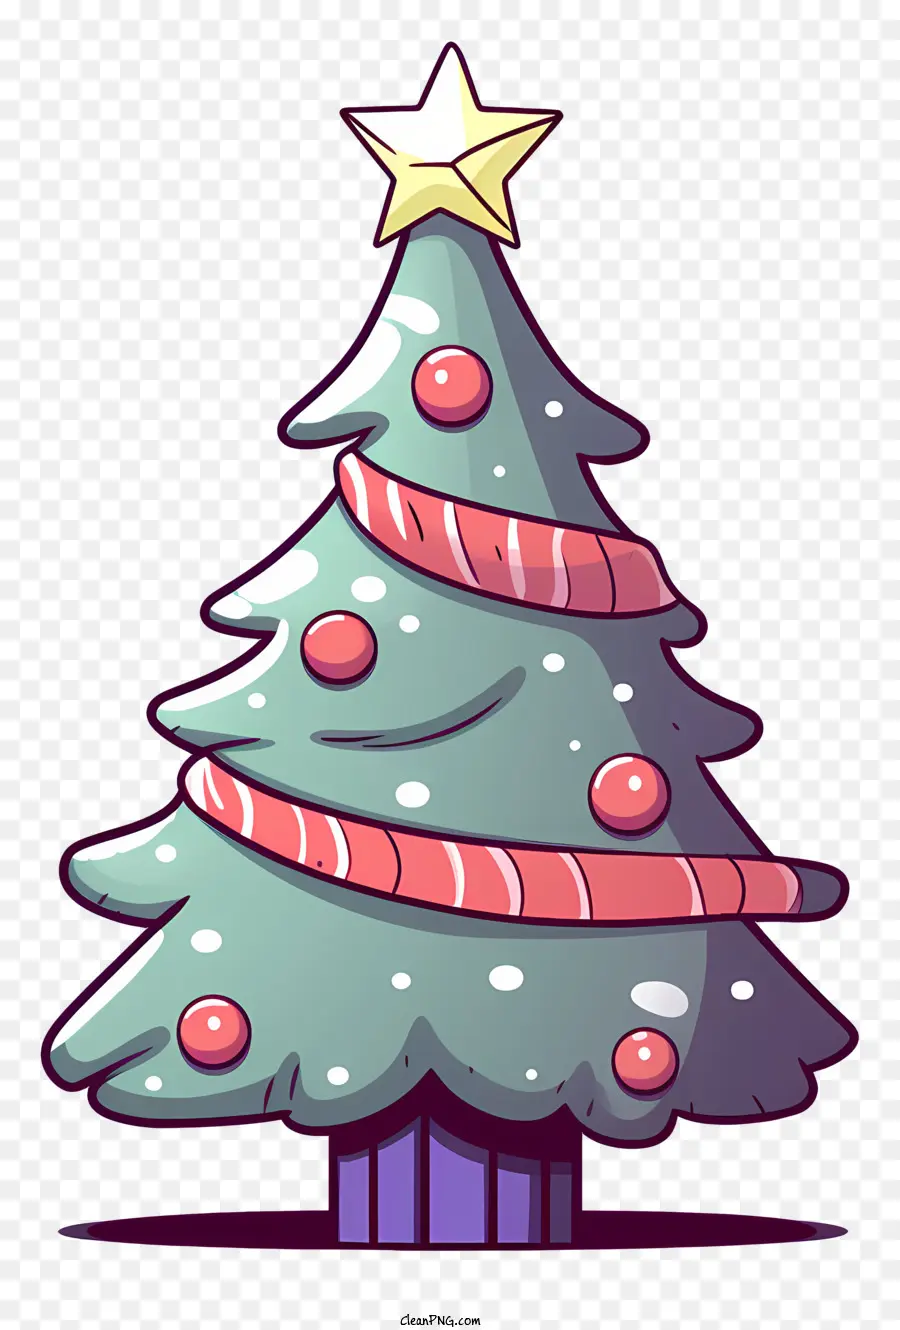 Desenho Animado Da árvore De Natal，Estrela Em Cima Da árvore De Natal PNG